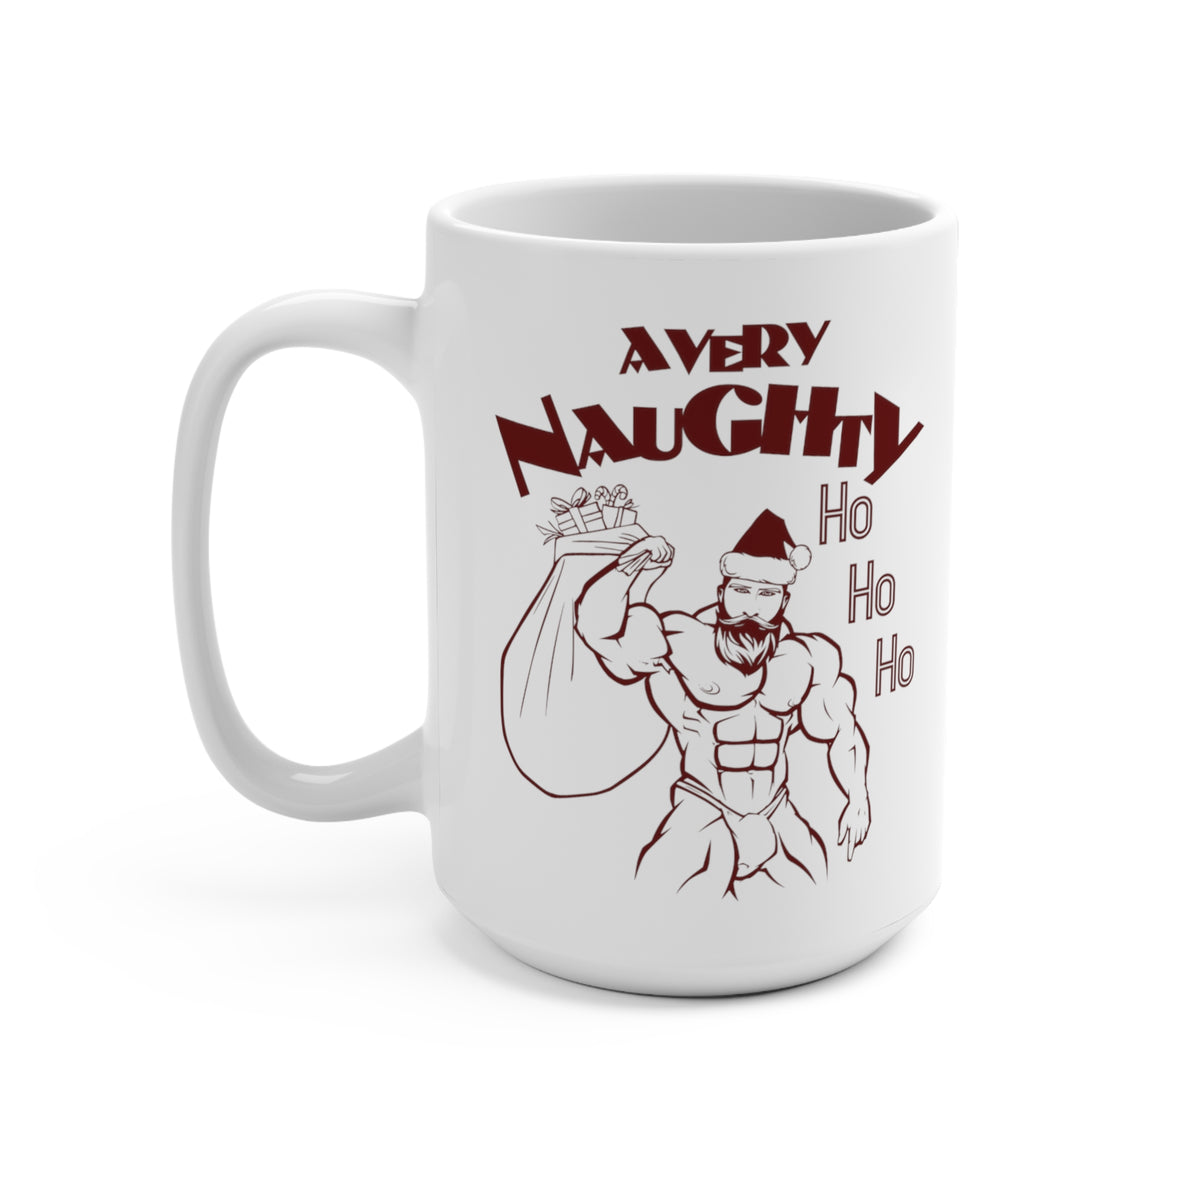 A Very Naughty Ho Mug - Mug - Twisted Jezebel